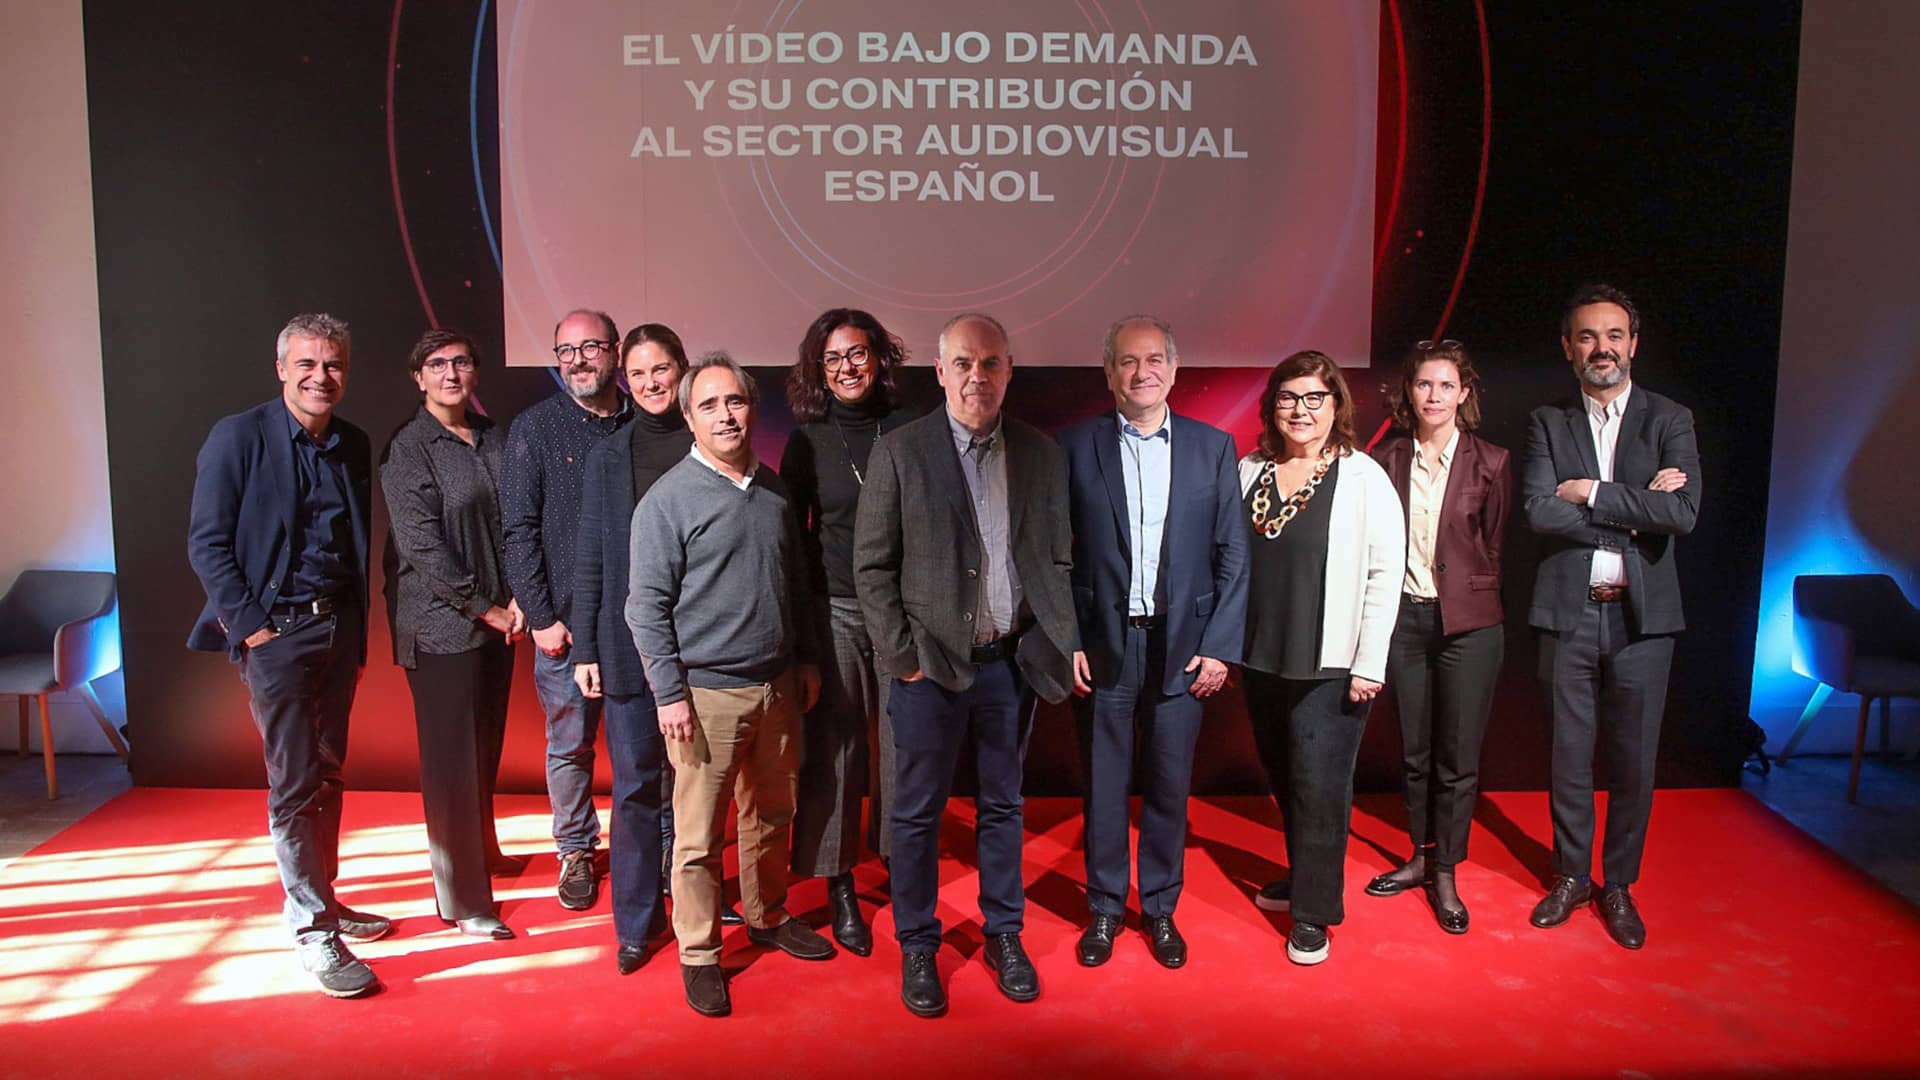 El vídeo bajo demanda y su contribución al sector audiovisual español